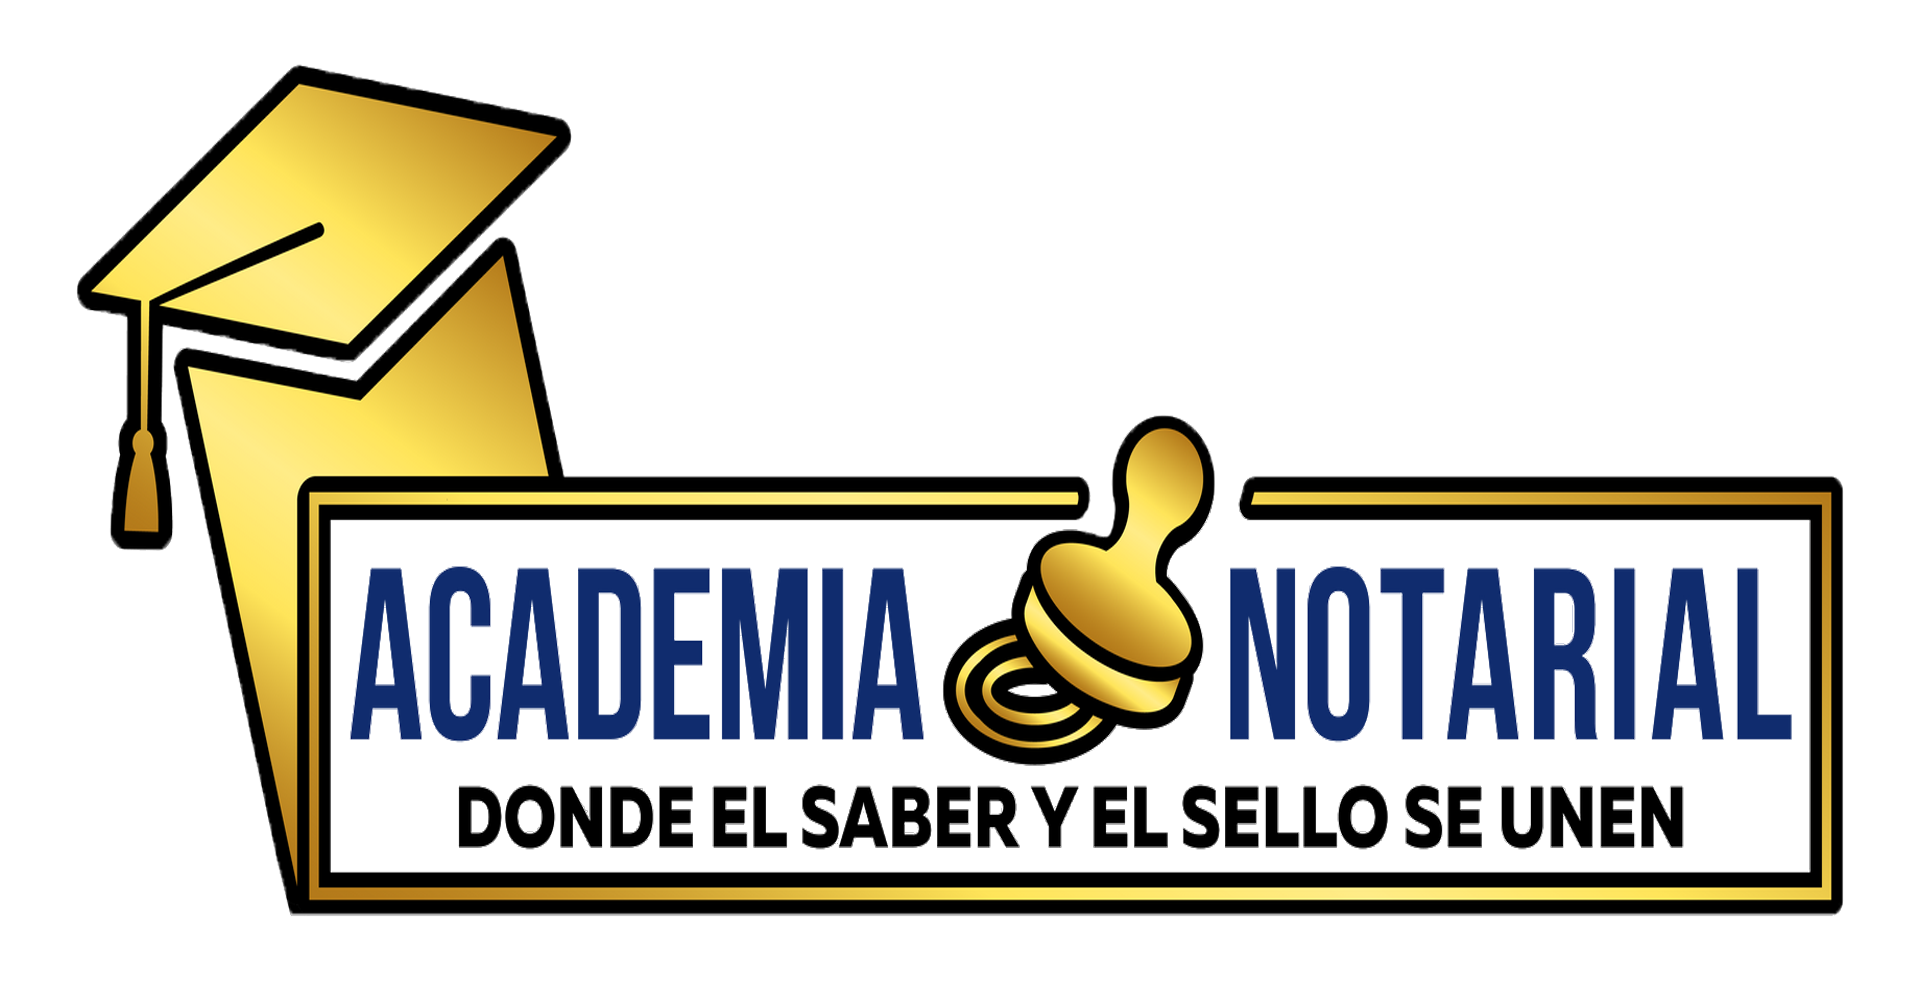 Academia Notarial